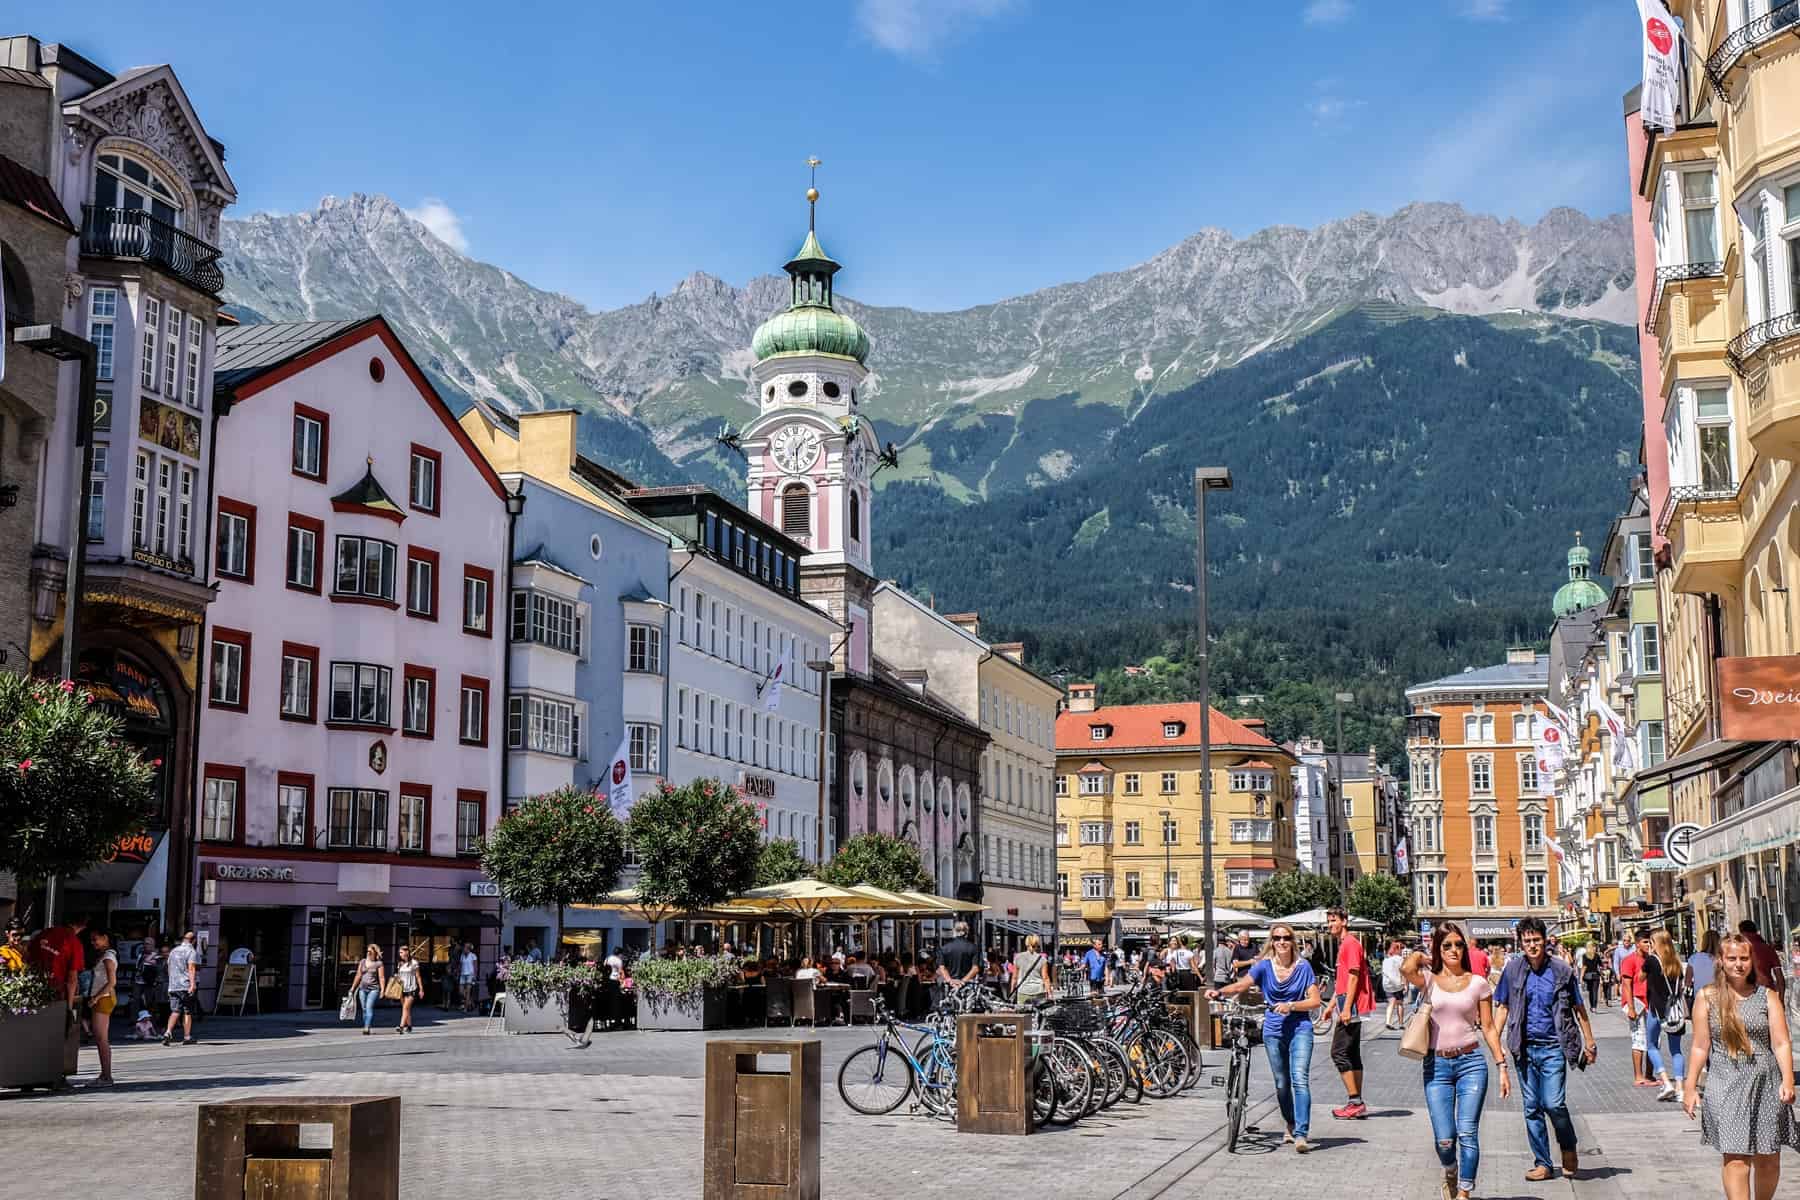 Innsbruck's Old Town